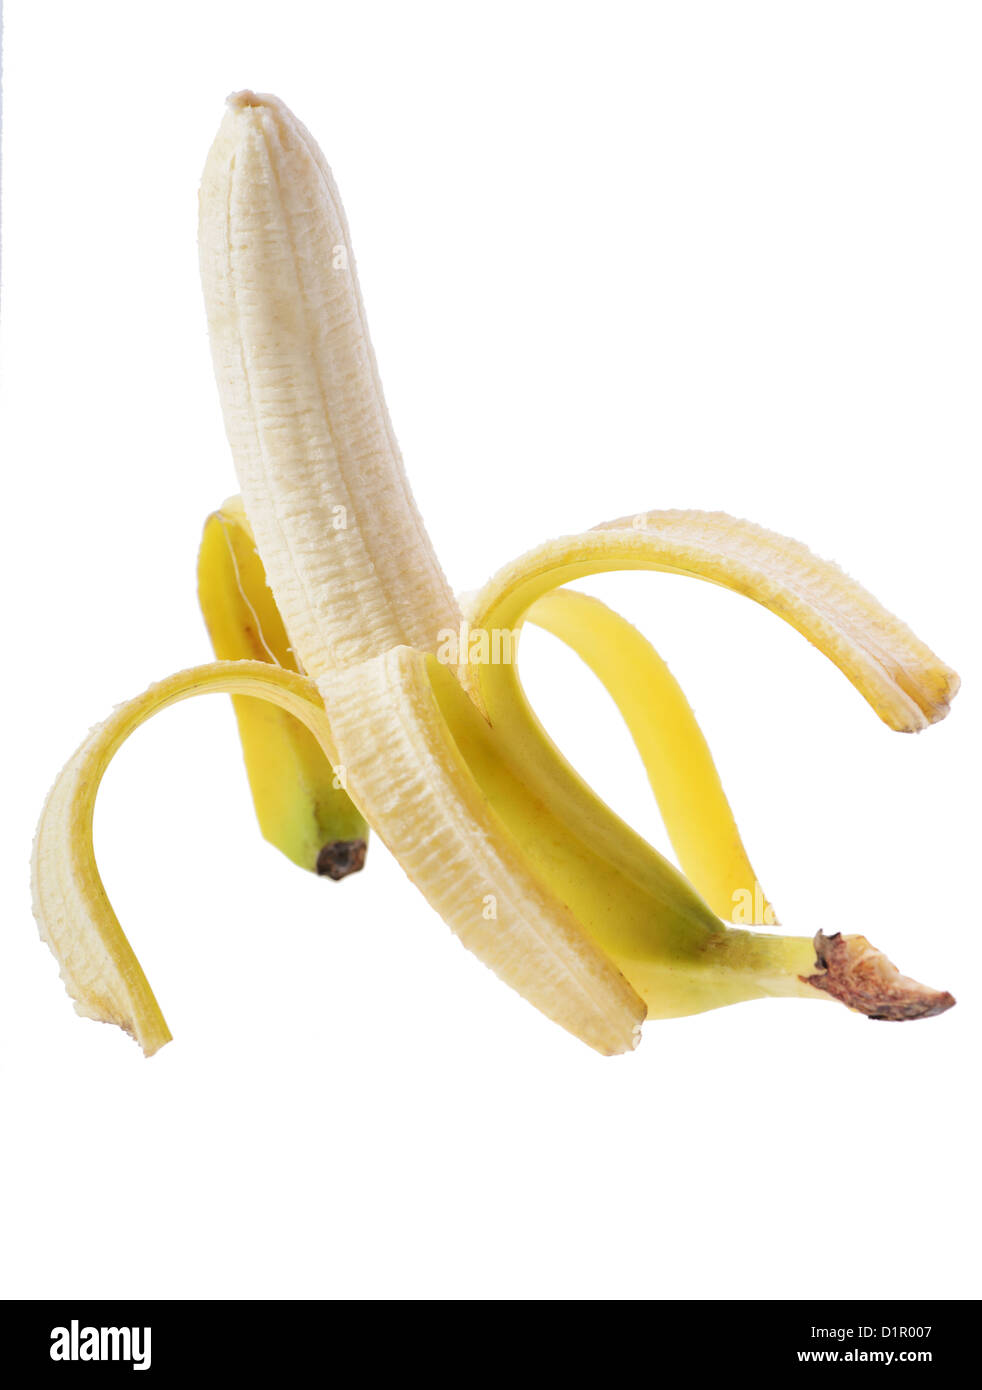 Open banana isolated on white background Stock Photo